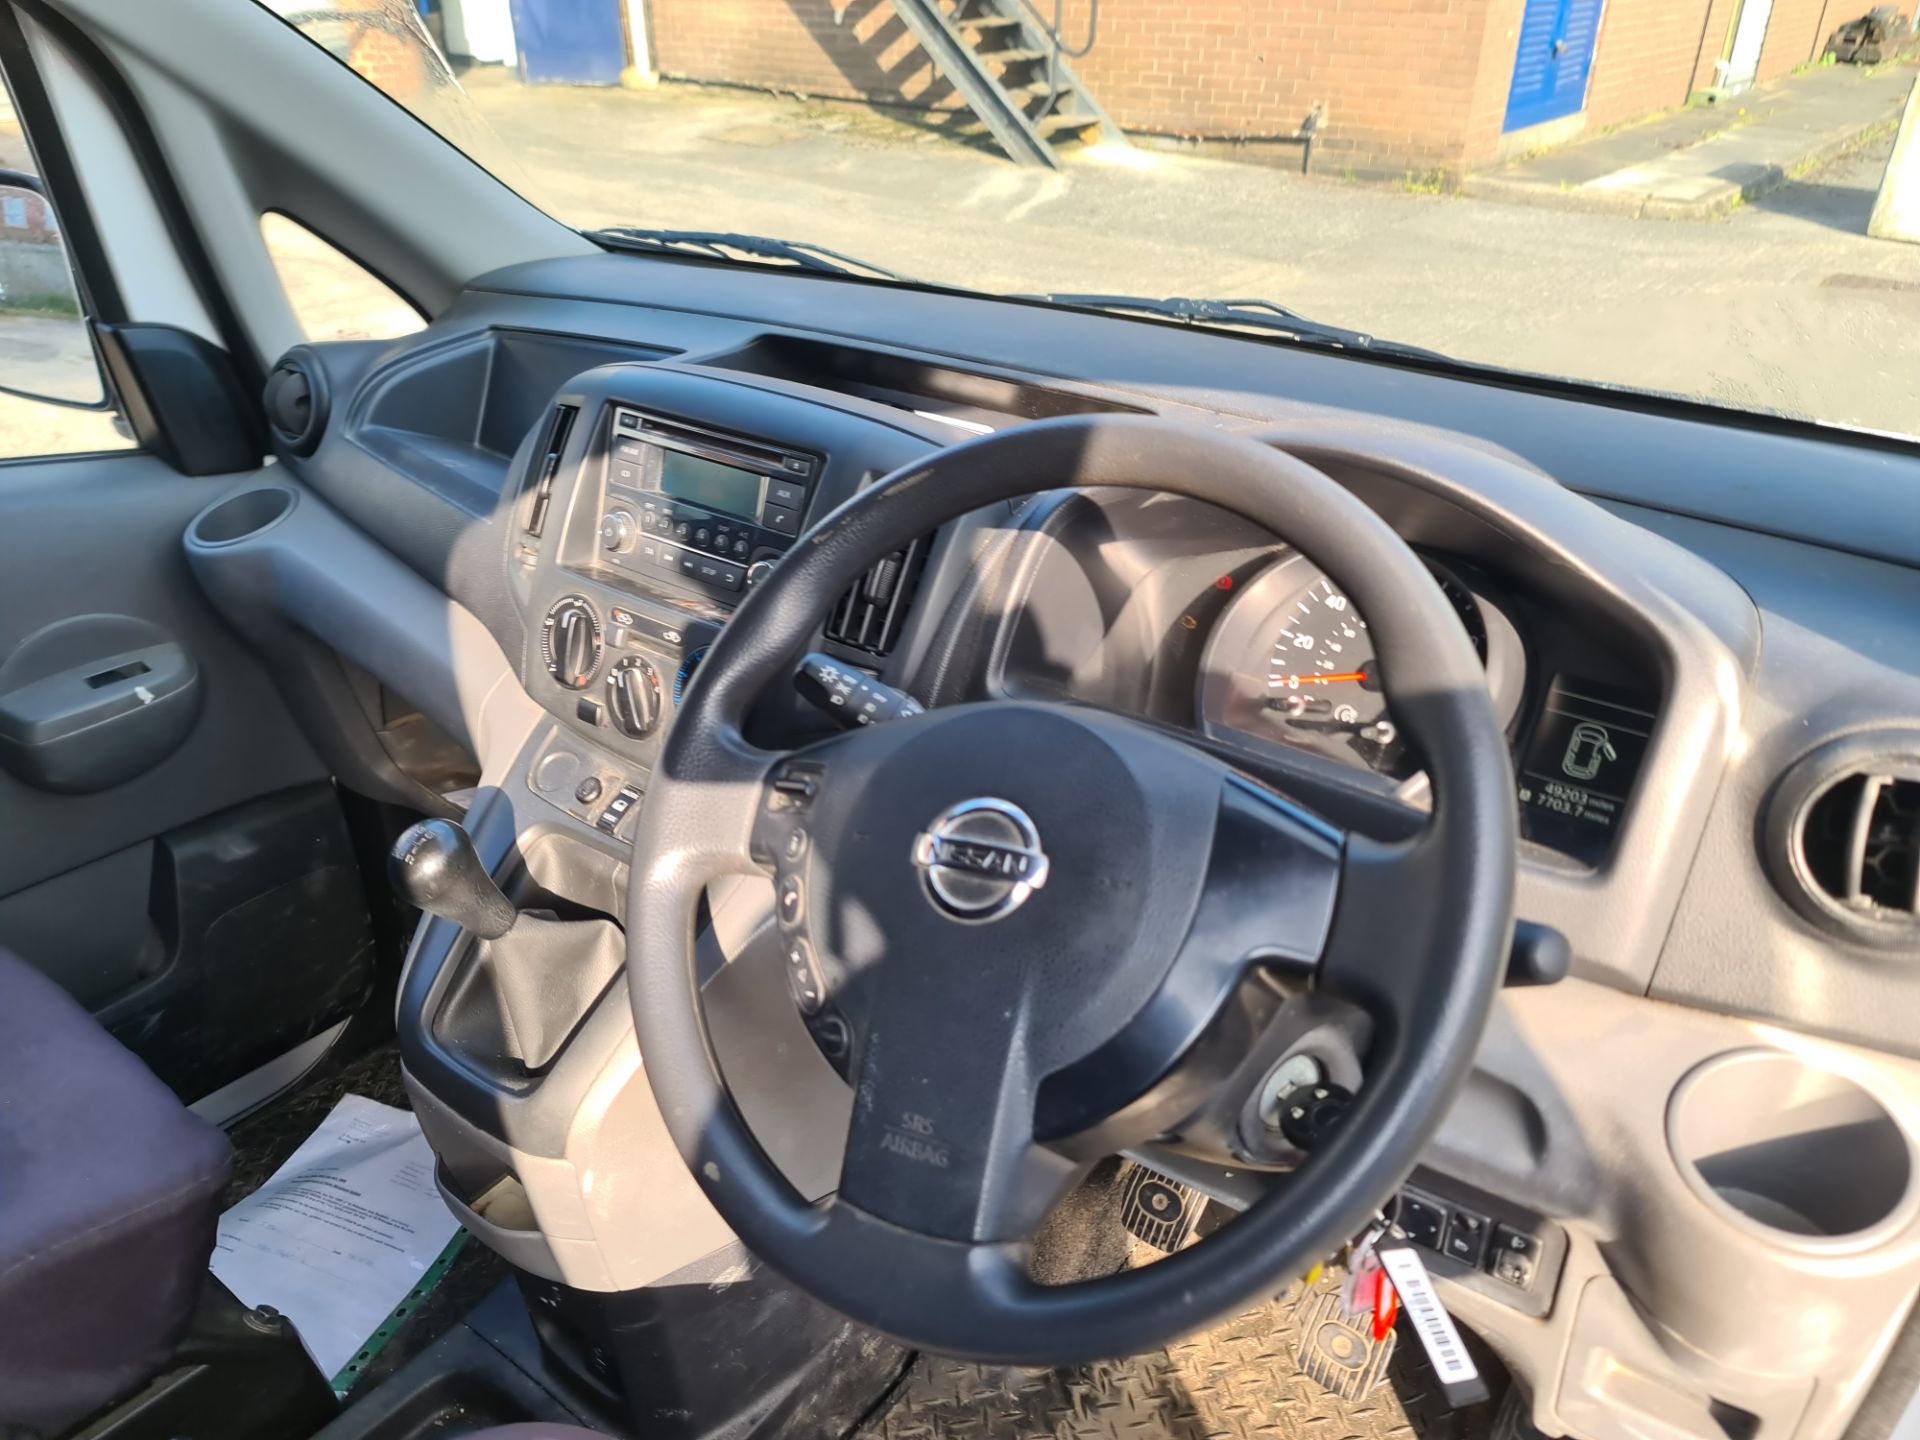 2018 Nissan NV200 Acenta DCI car derived van - Image 21 of 93